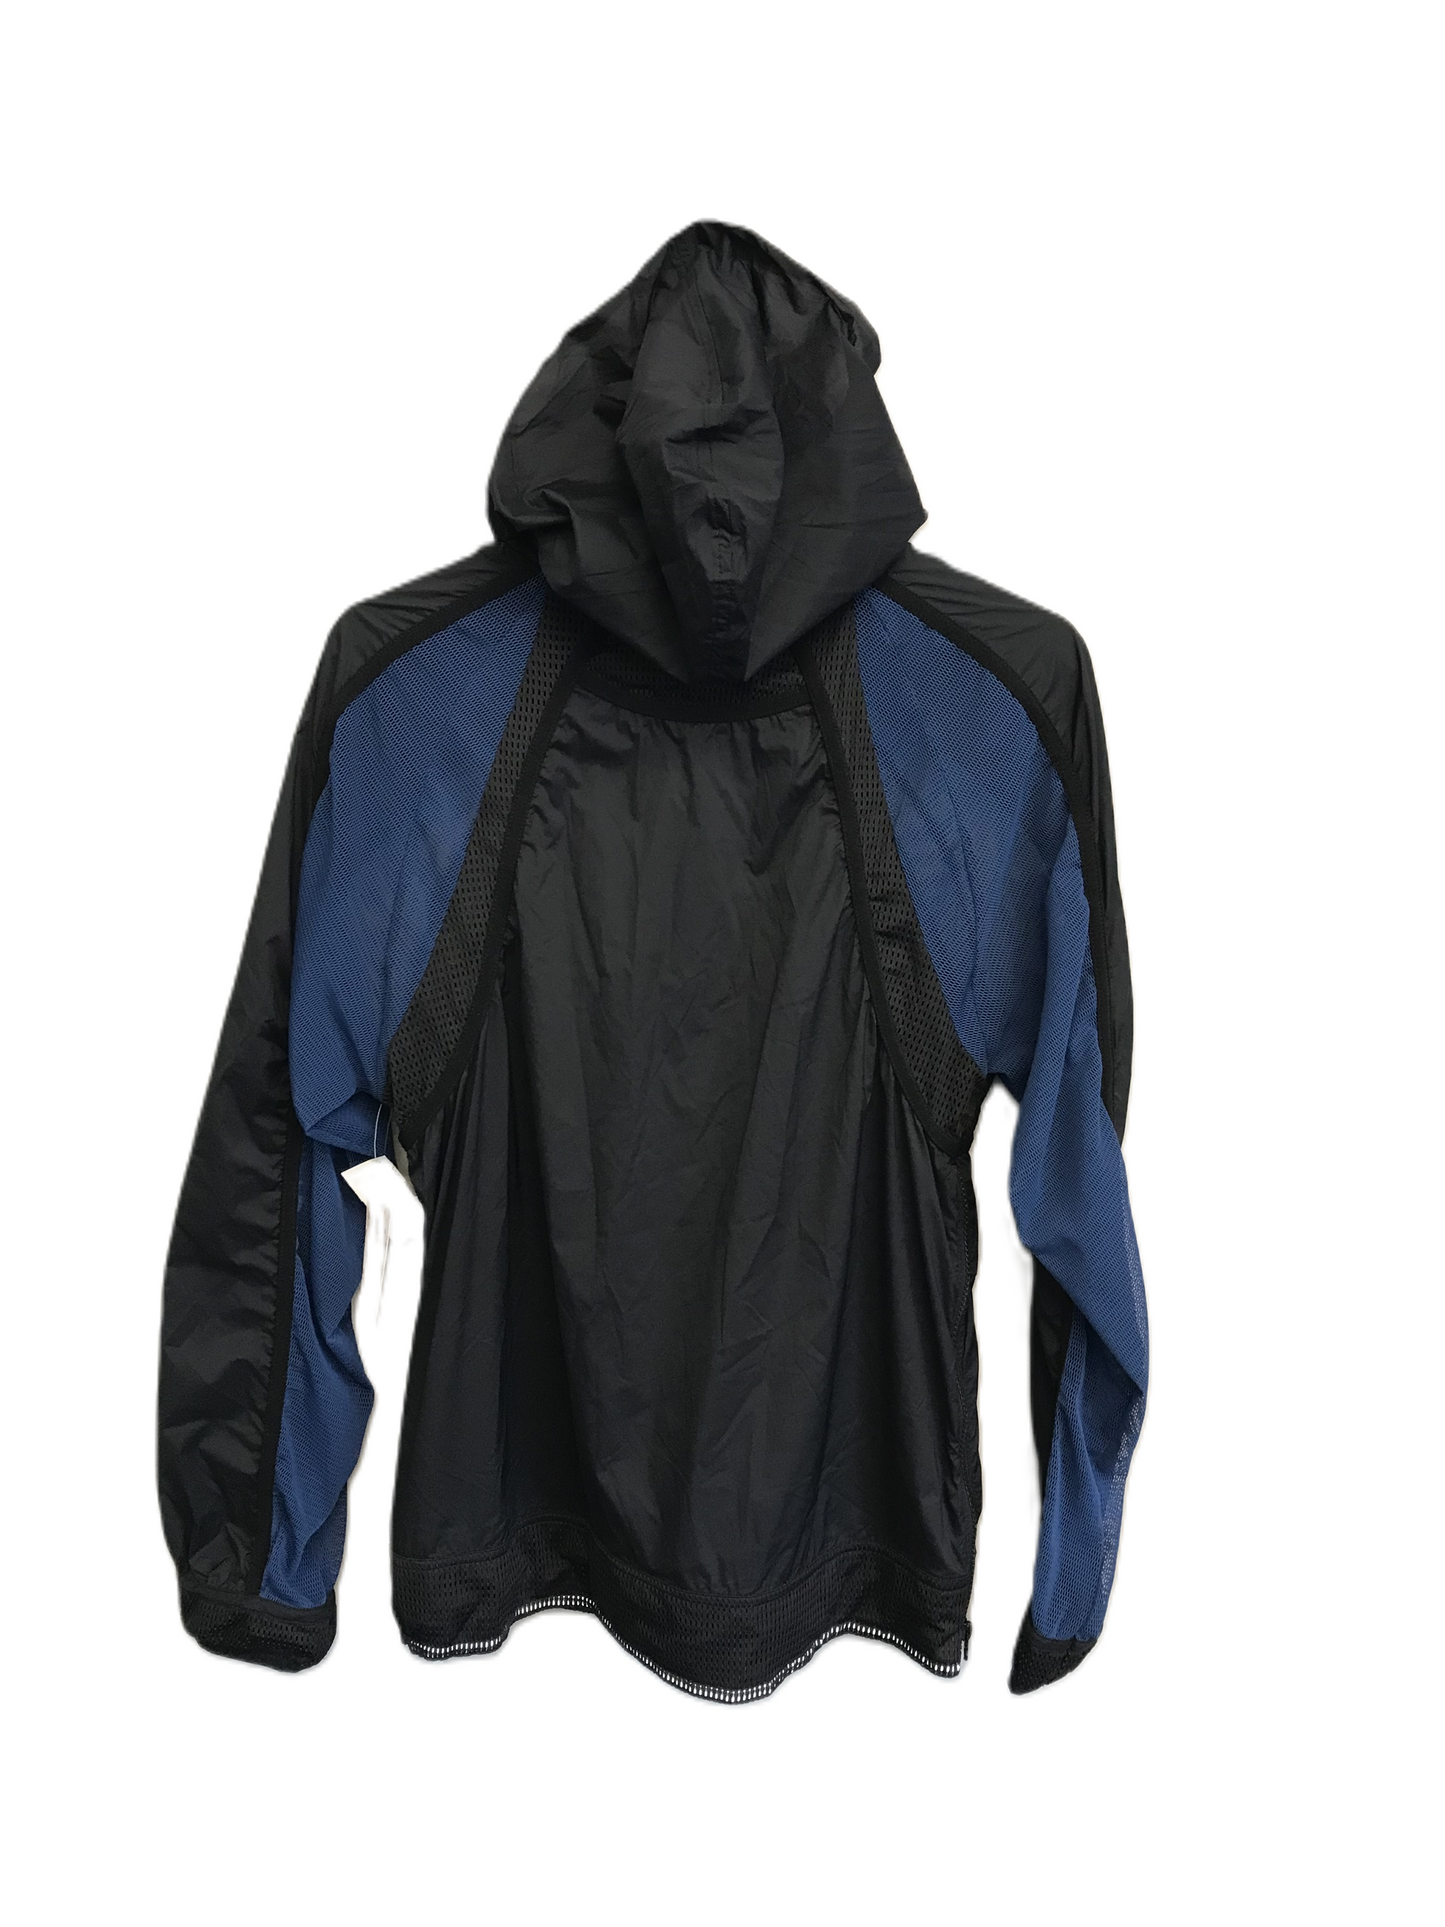 Black & Blue Jacket Windbreaker By Free People, Size: M